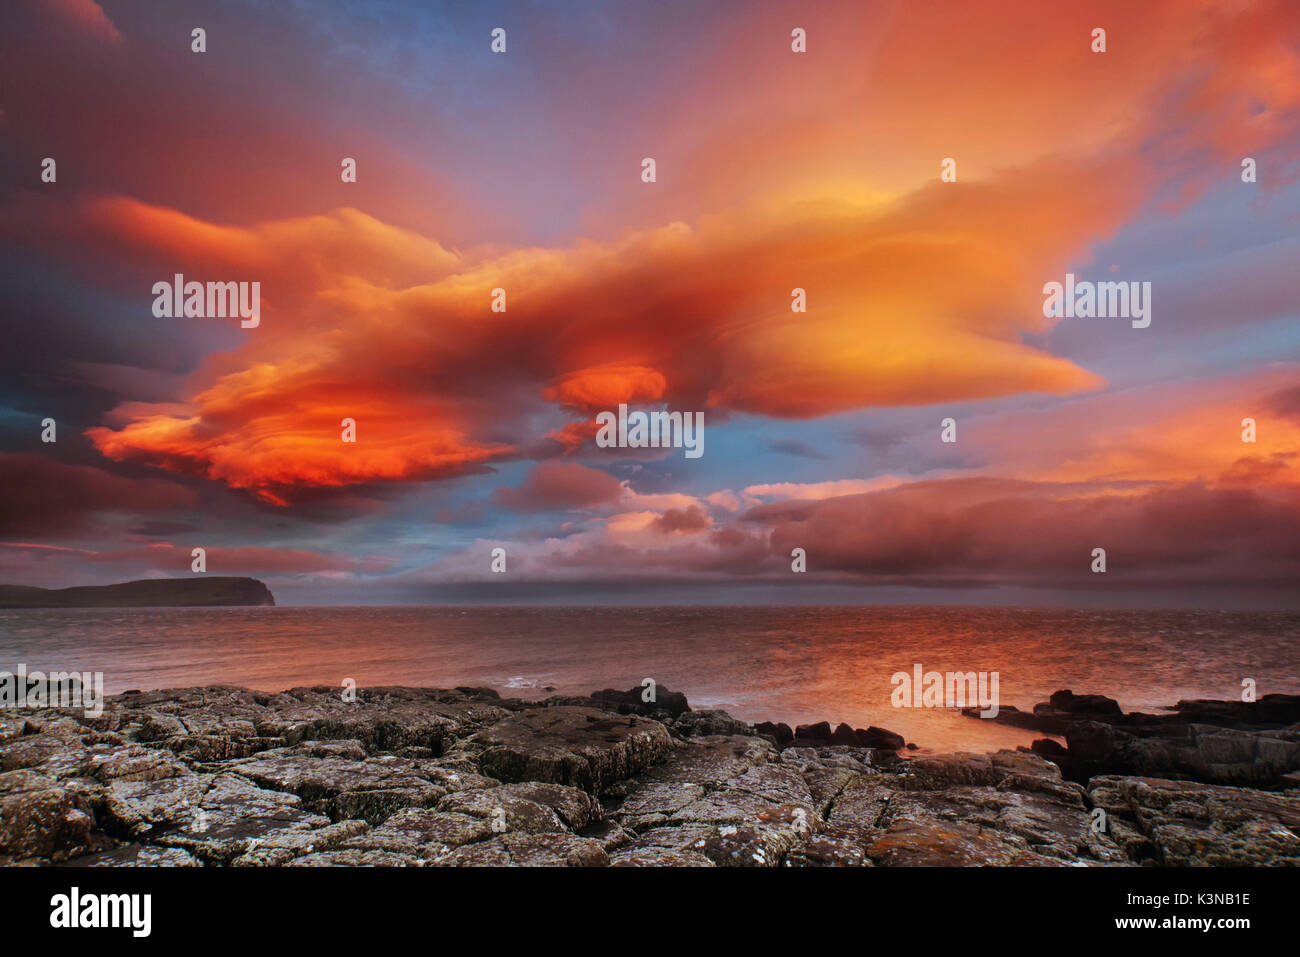 Europa, Schottland, Skye Island - Wolken an landschaftlich Punkt gemalt Stockfoto